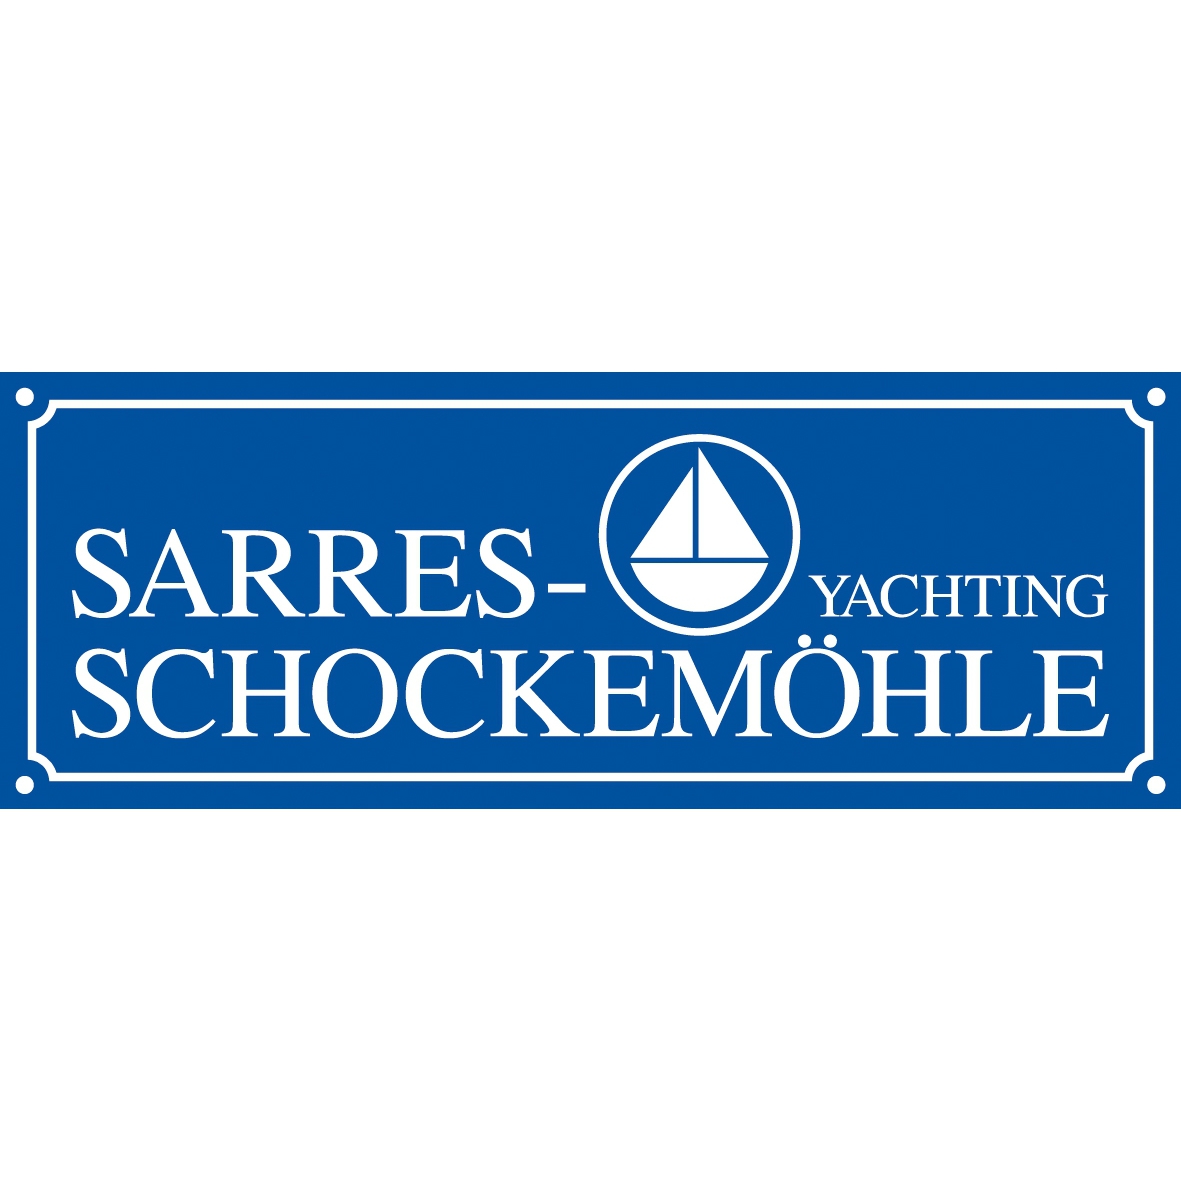 Sarres-Schockemöhle Yachting GmbH in Rheinberg